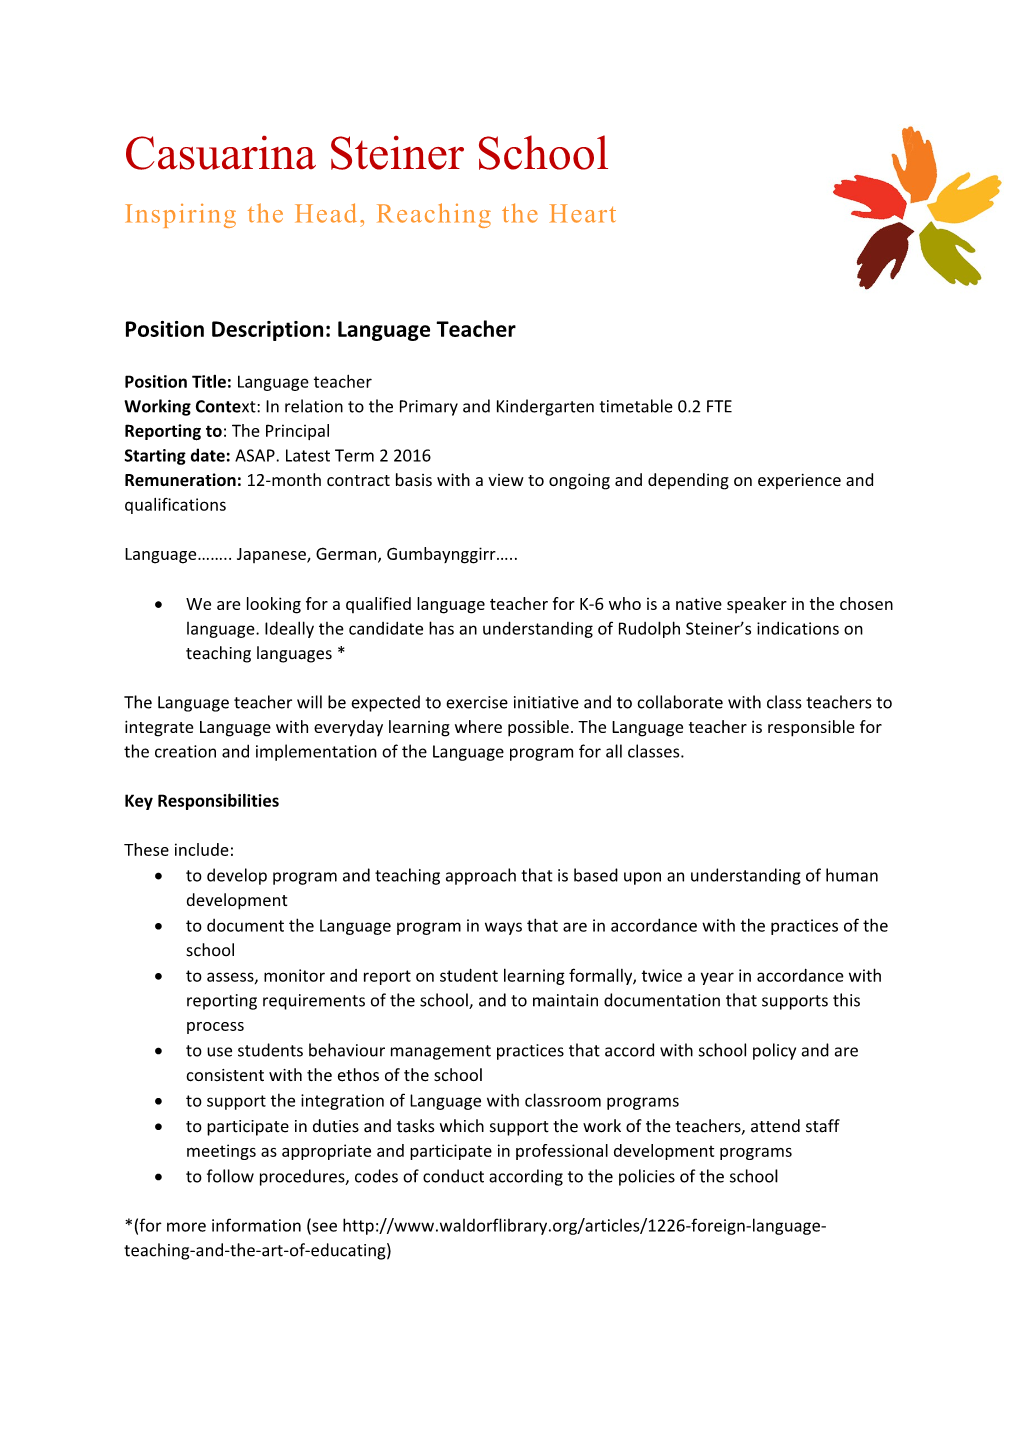 Position Description: Language Teacher